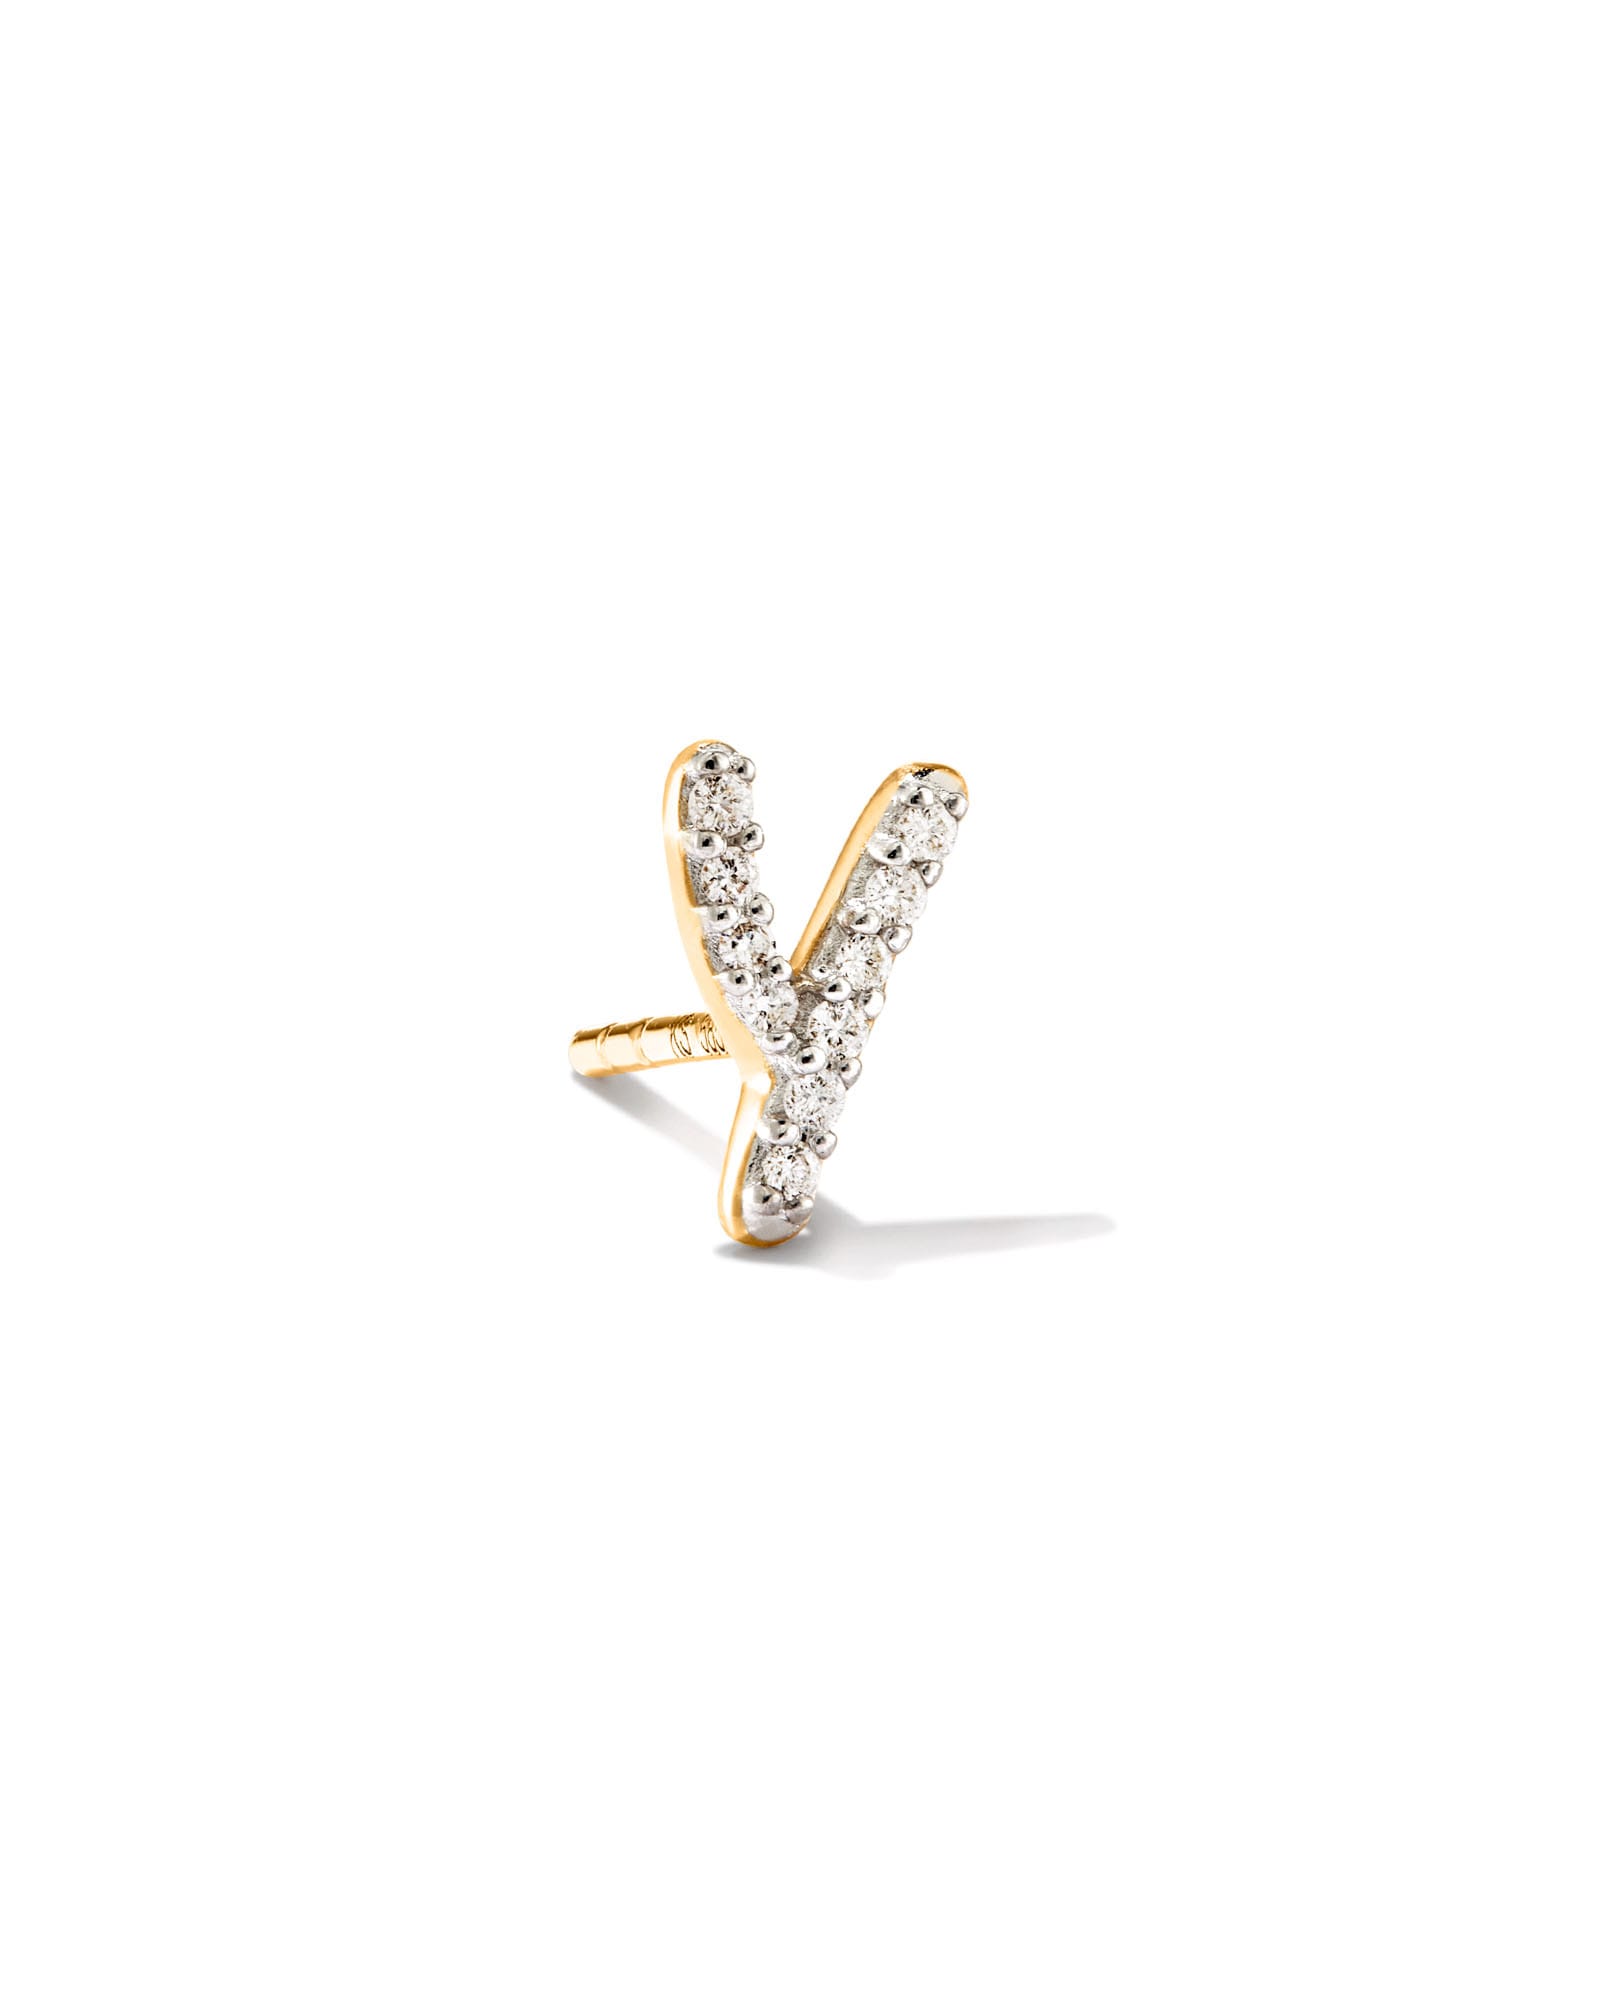 Kendra Scott Letter Y 14k Yellow Gold Single Stud Earring in White Diamond | Diamonds